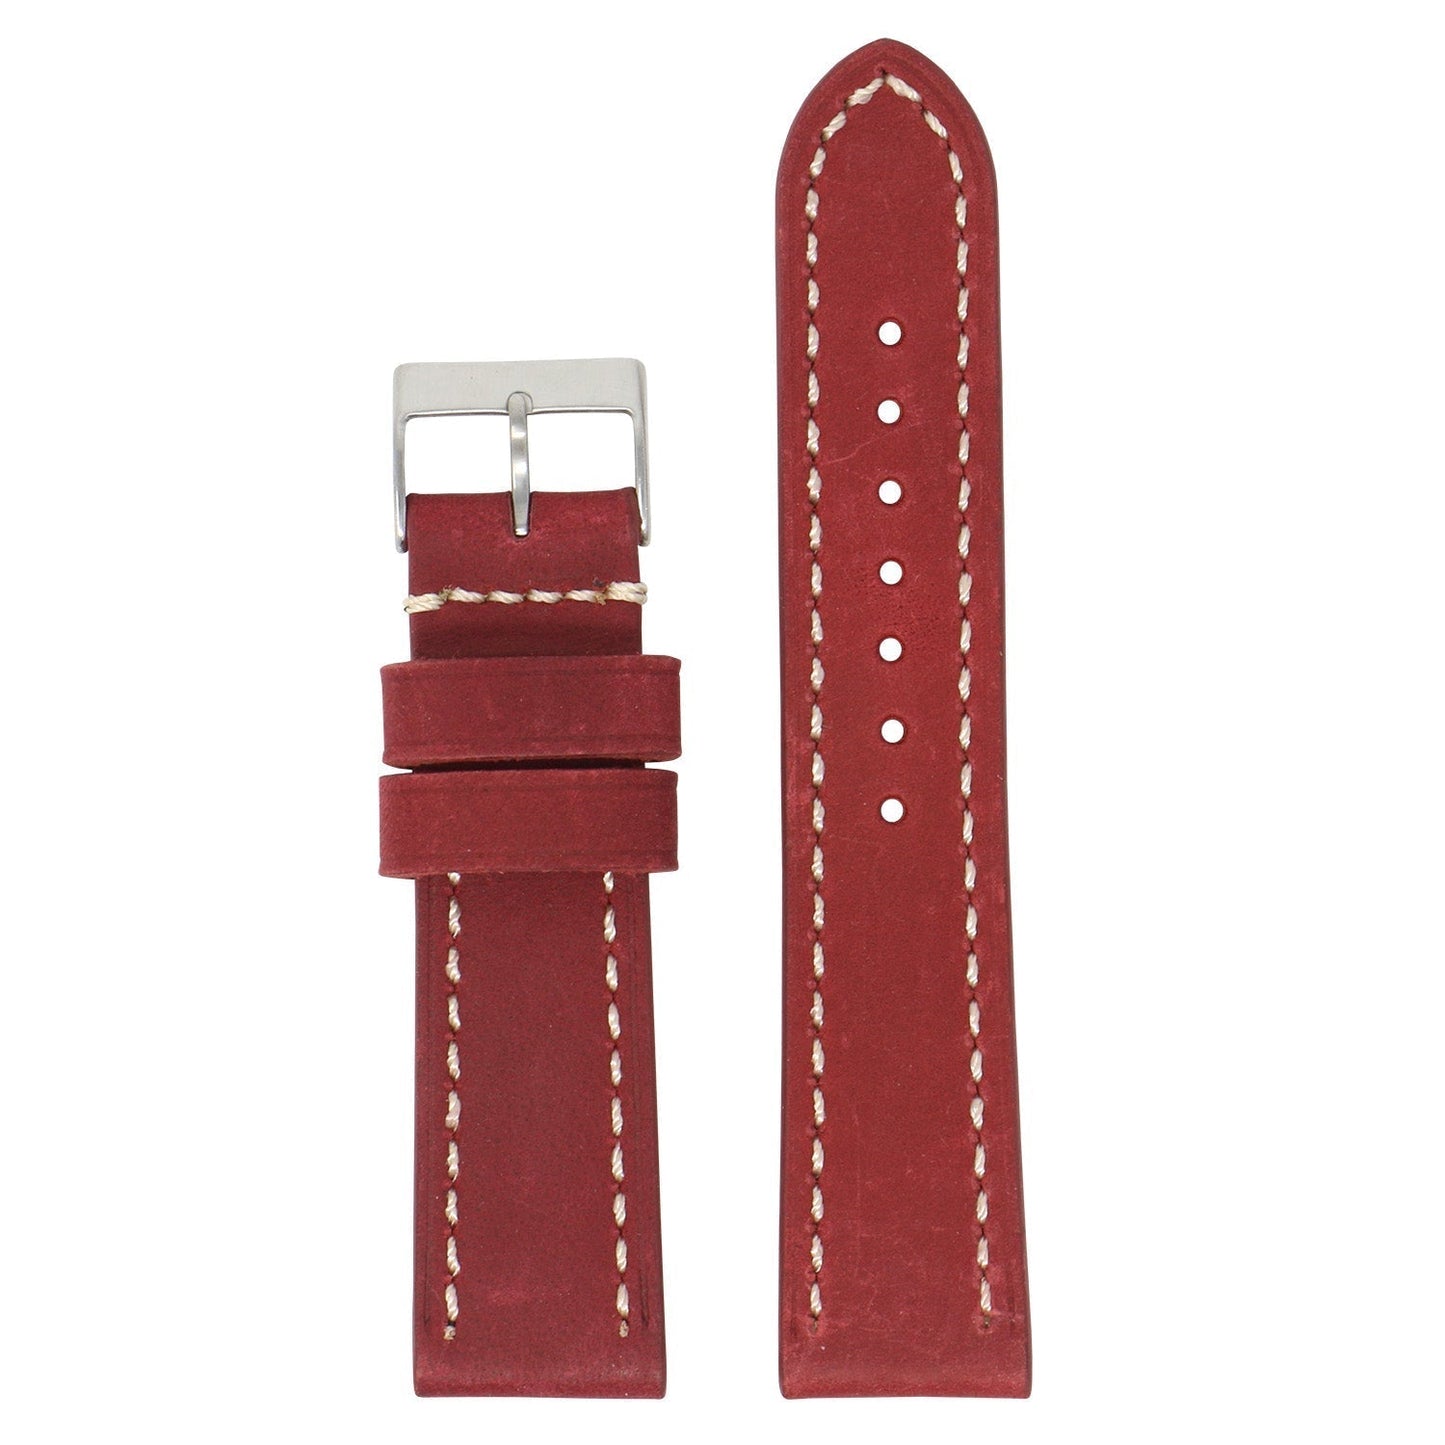 21mm Vintage Leather Strap (Short, Standard, Extra Long)